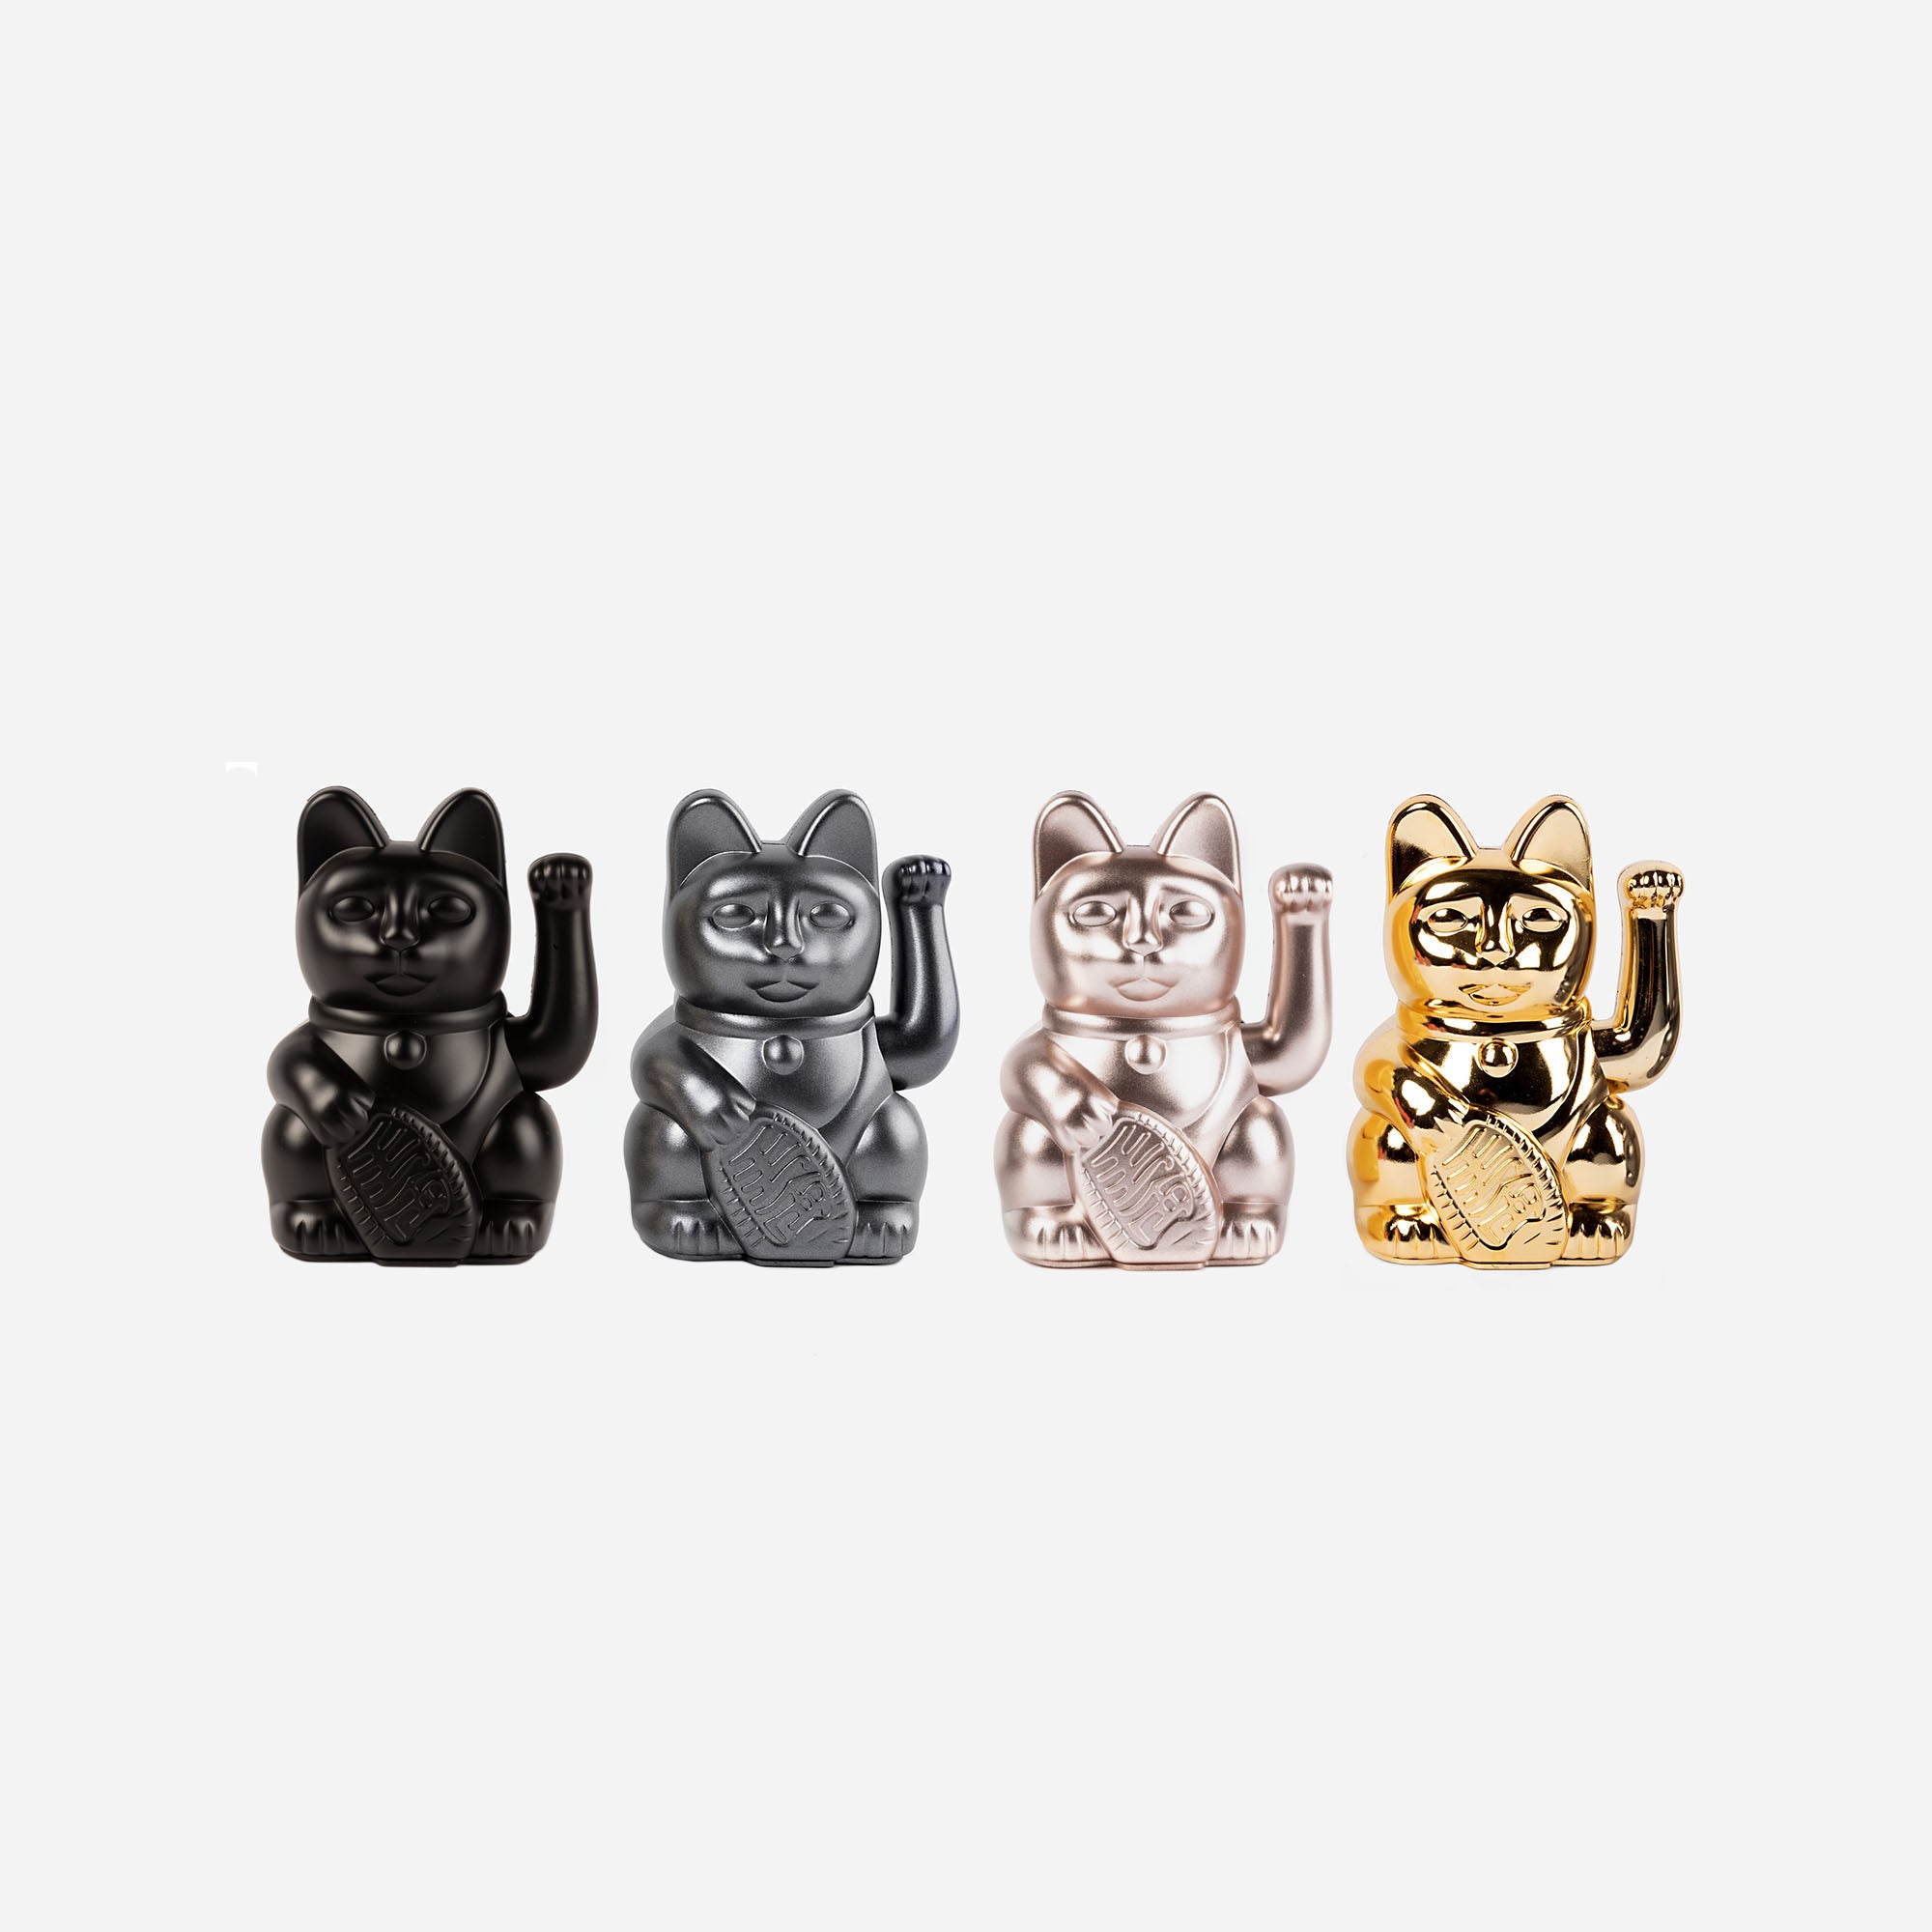 Cerimonia nuziale di coppia di gatti manekineko in ceramica giapponese -  KONEKOHINA - 3,5 cm